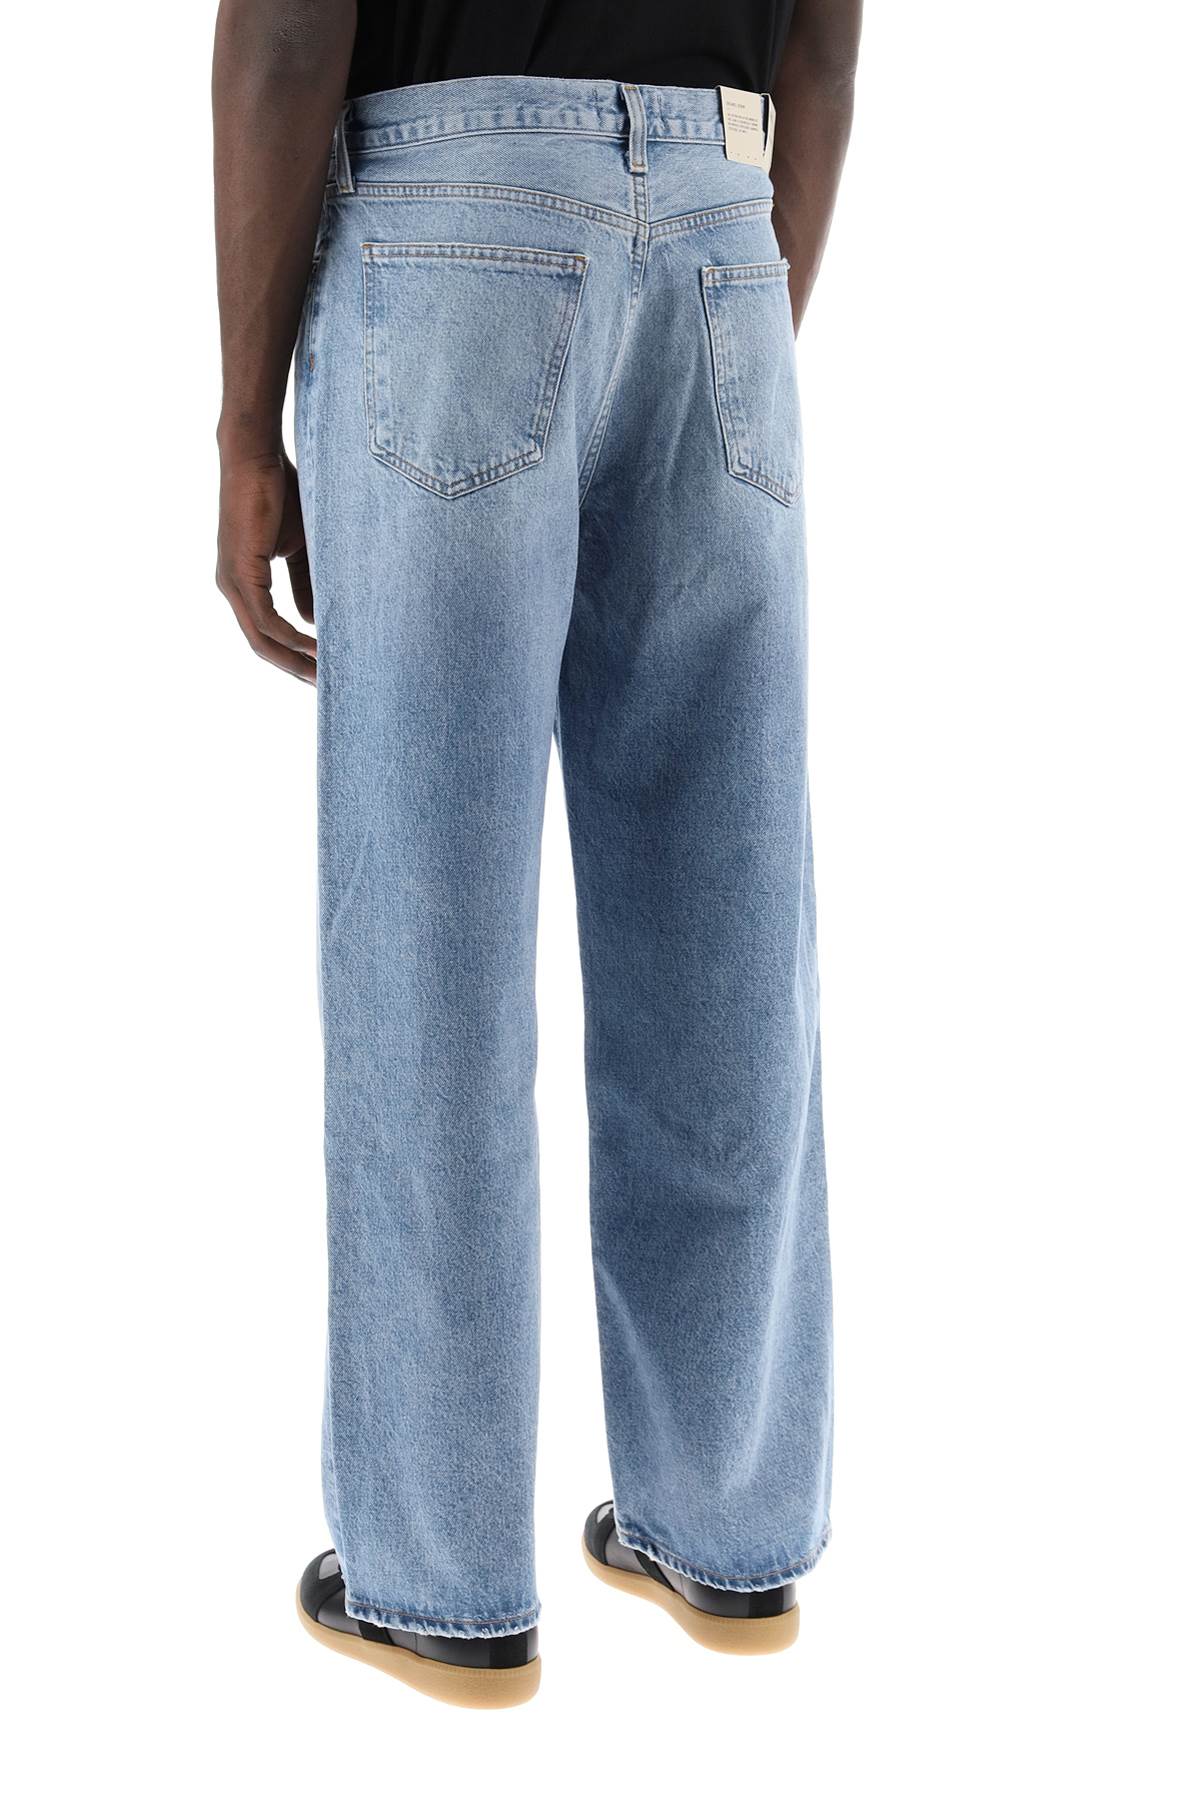 Agolde low-slung baggy jeans-2